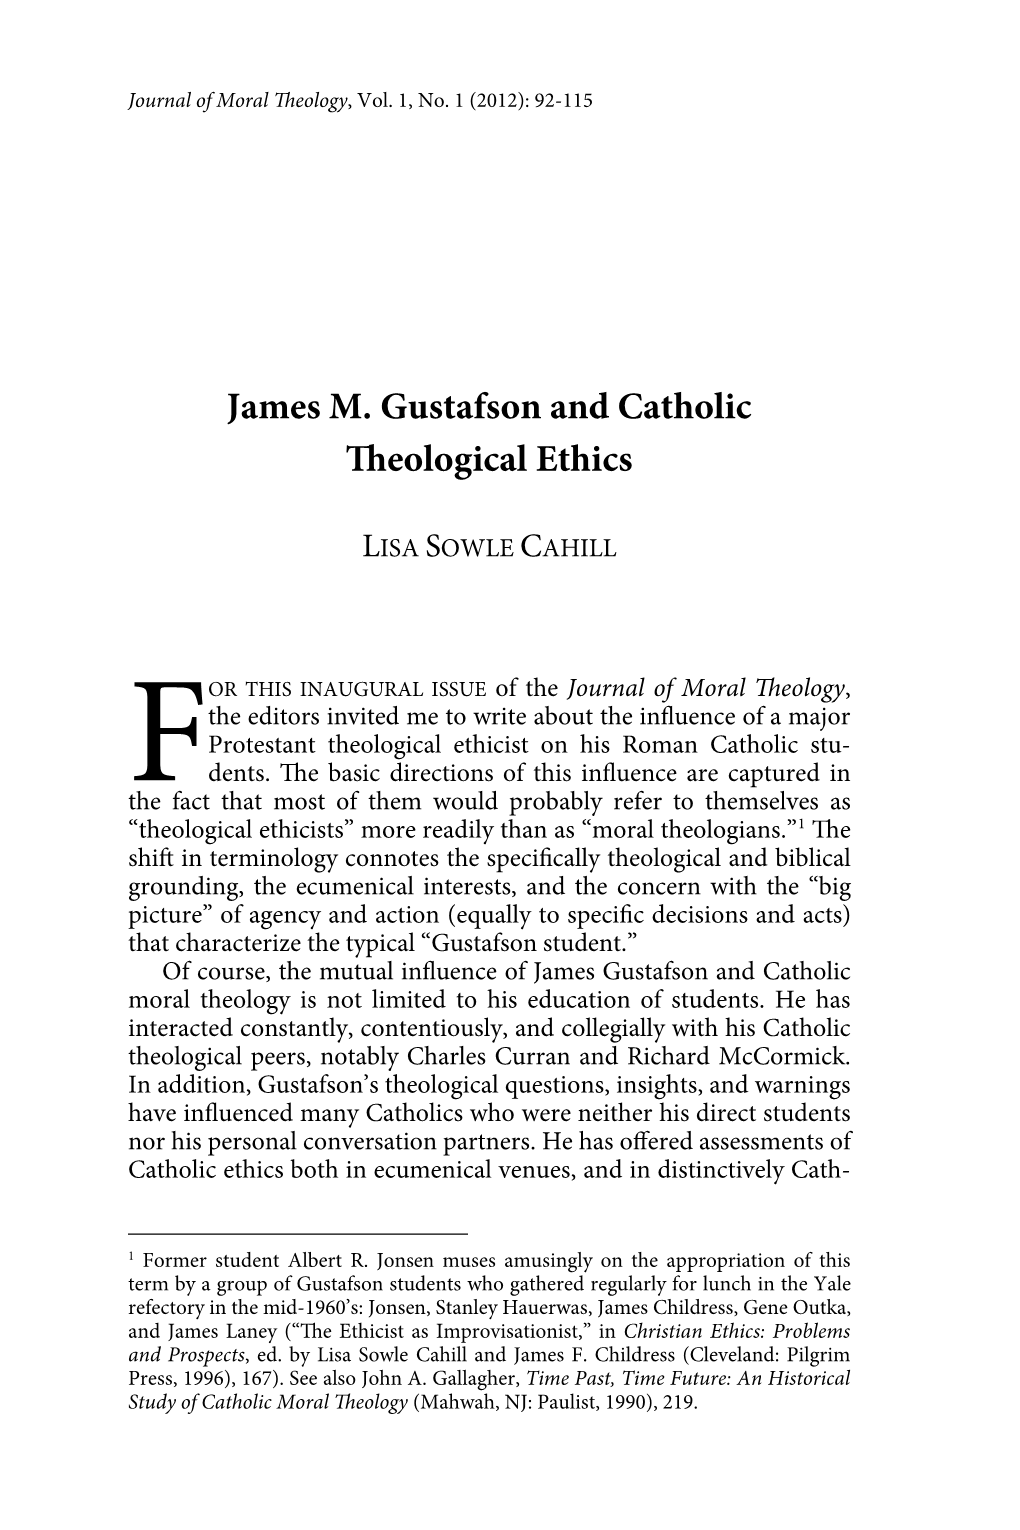 James M. Gustafson and Catholic Eological Ethics